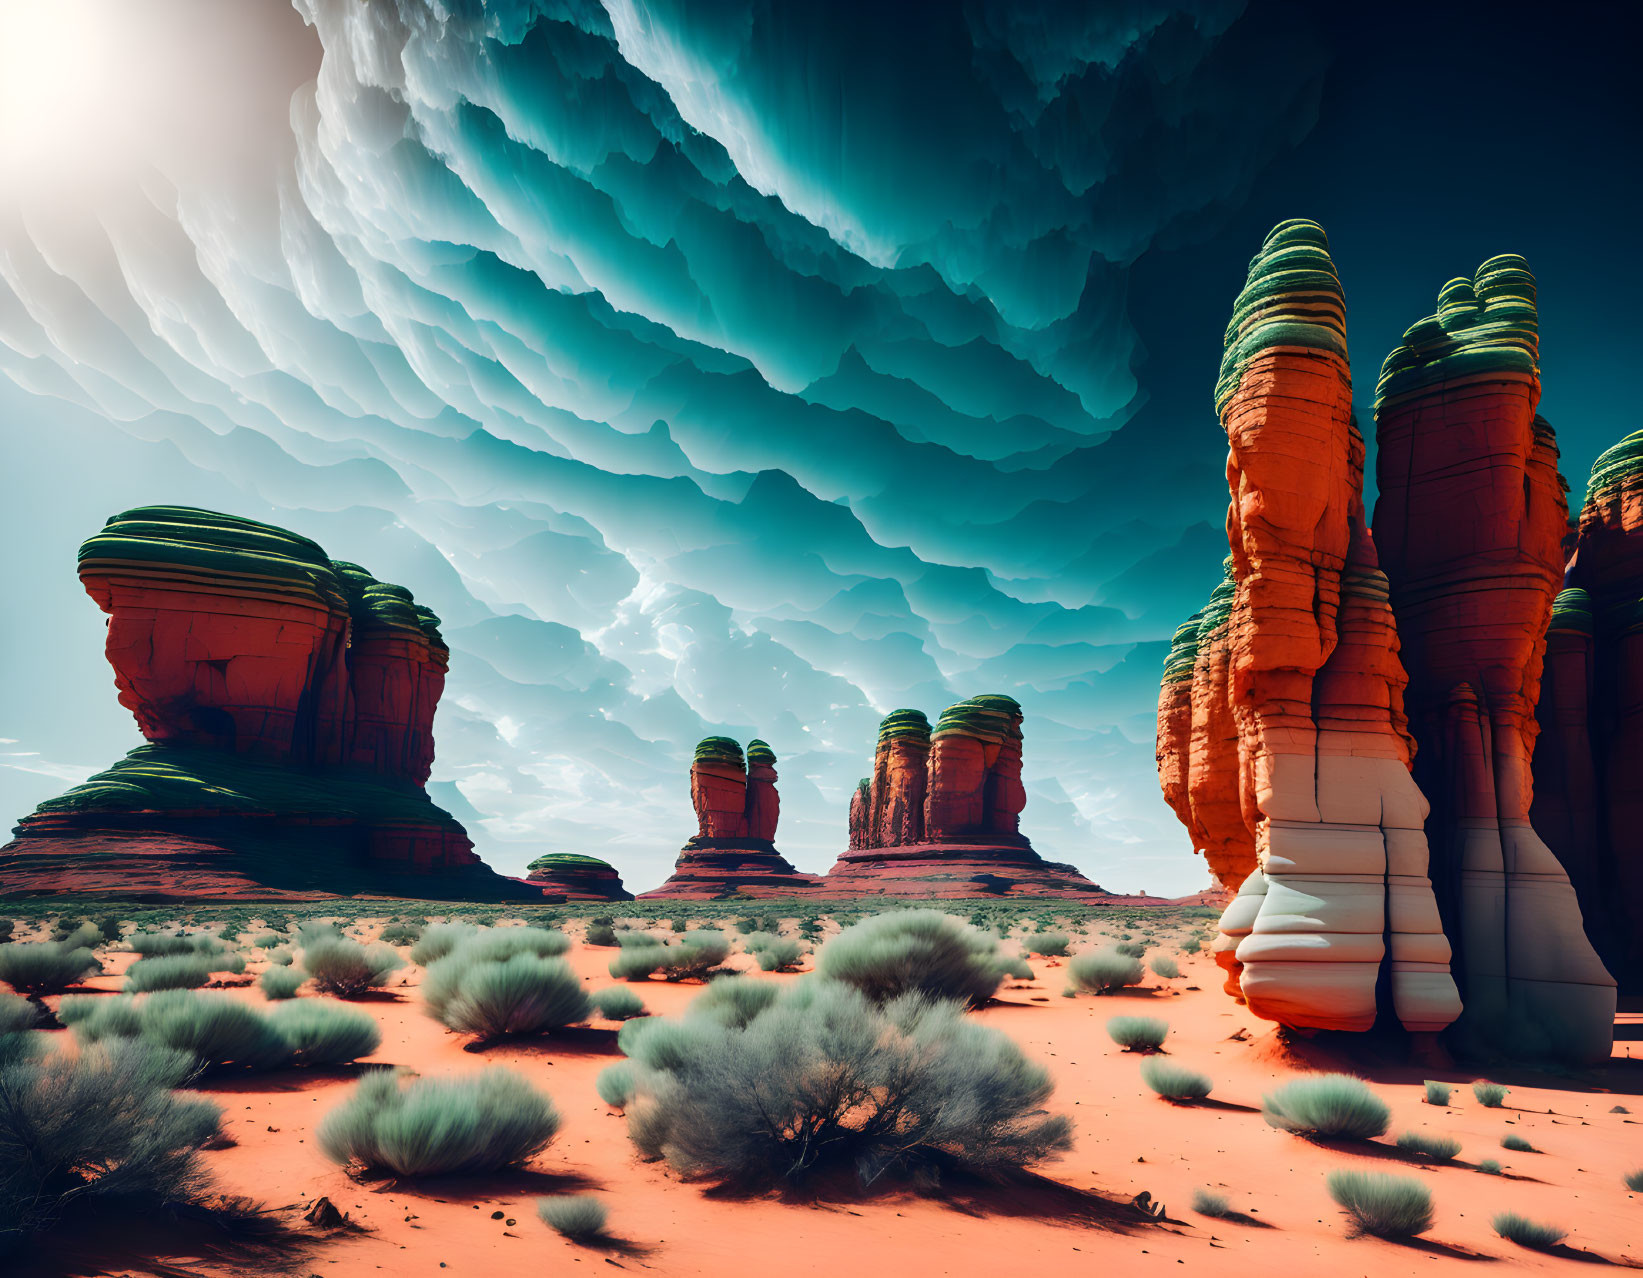 Vibrant orange rock formations in surreal desert landscape